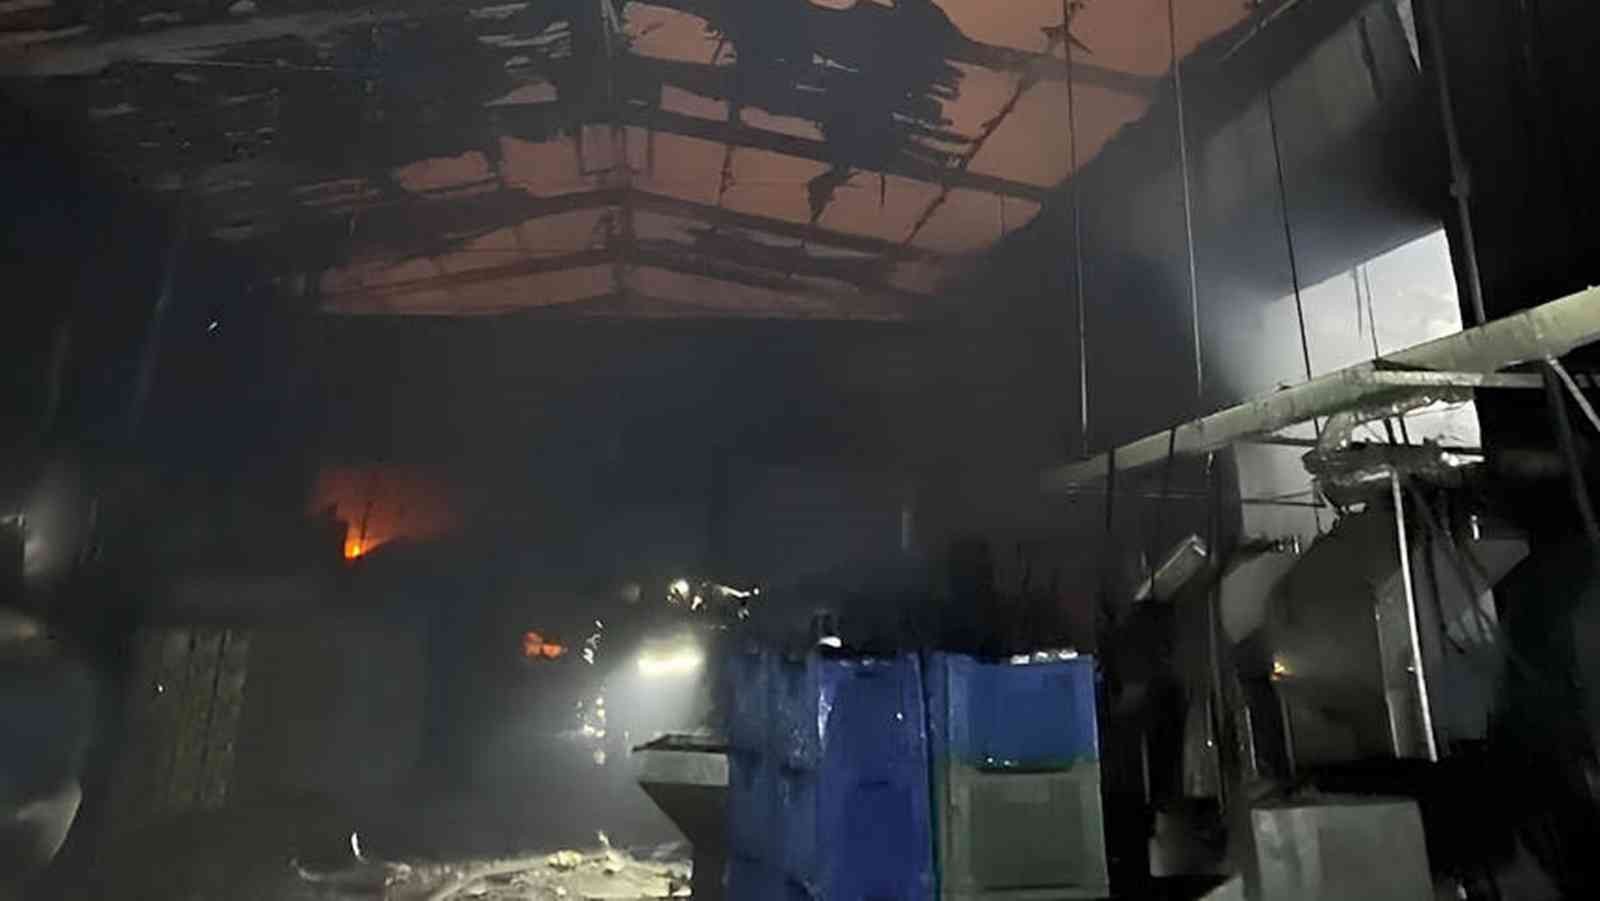 Zeytin fabrikasında çıkan yangın büyük çapta maddi hasara yol açtı